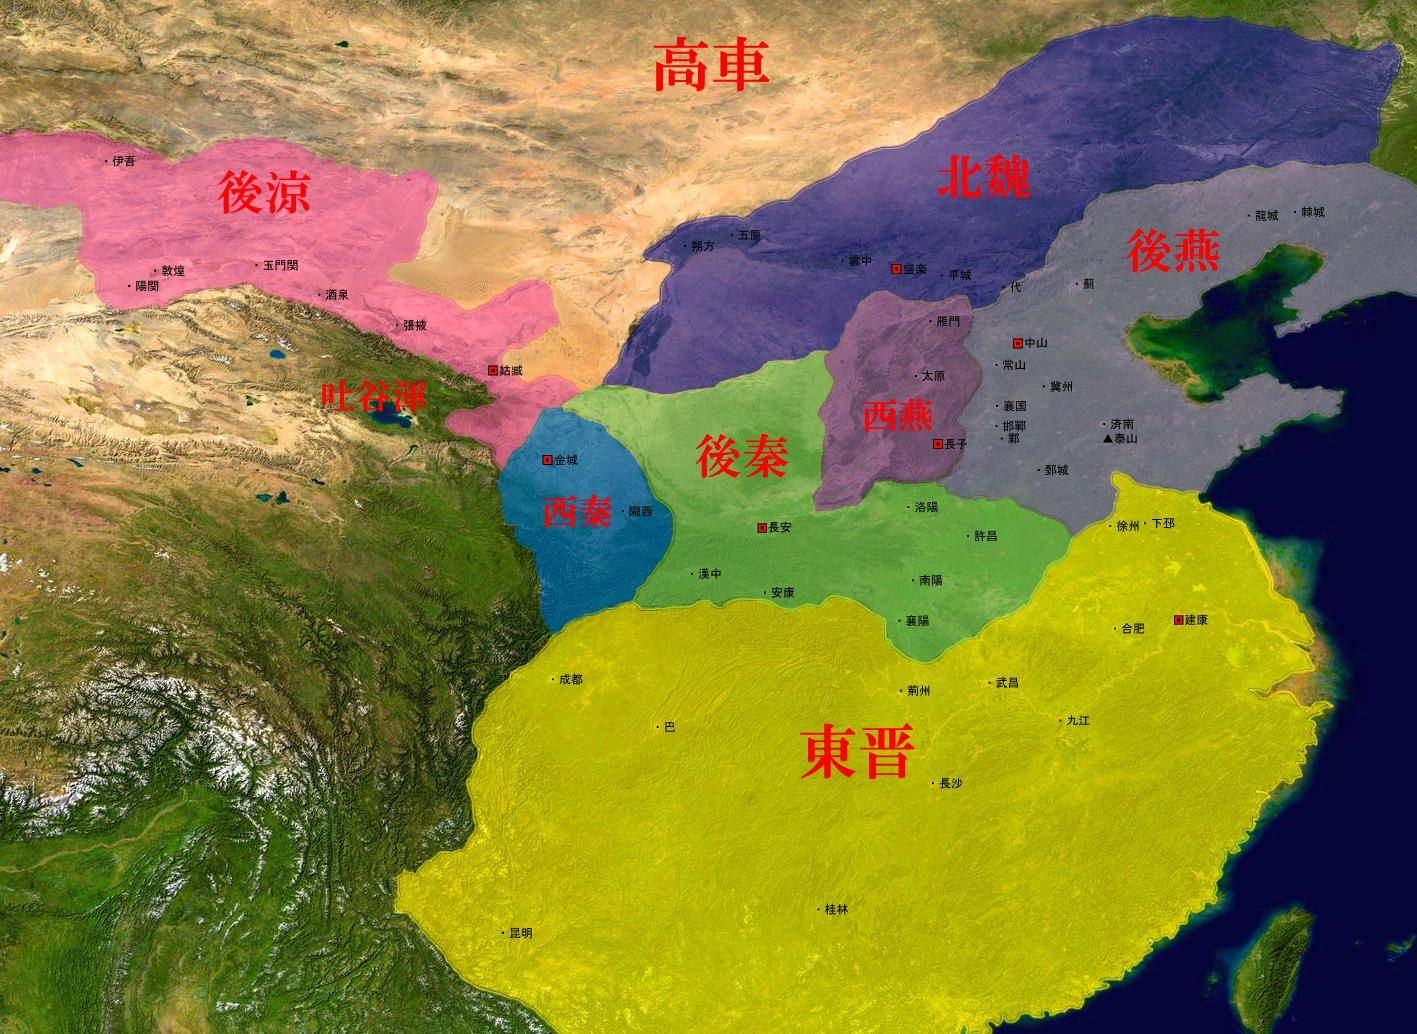 北魏在平城统治了108年,为何孝文帝元宏迁都洛阳后,40年就宣告灭亡了